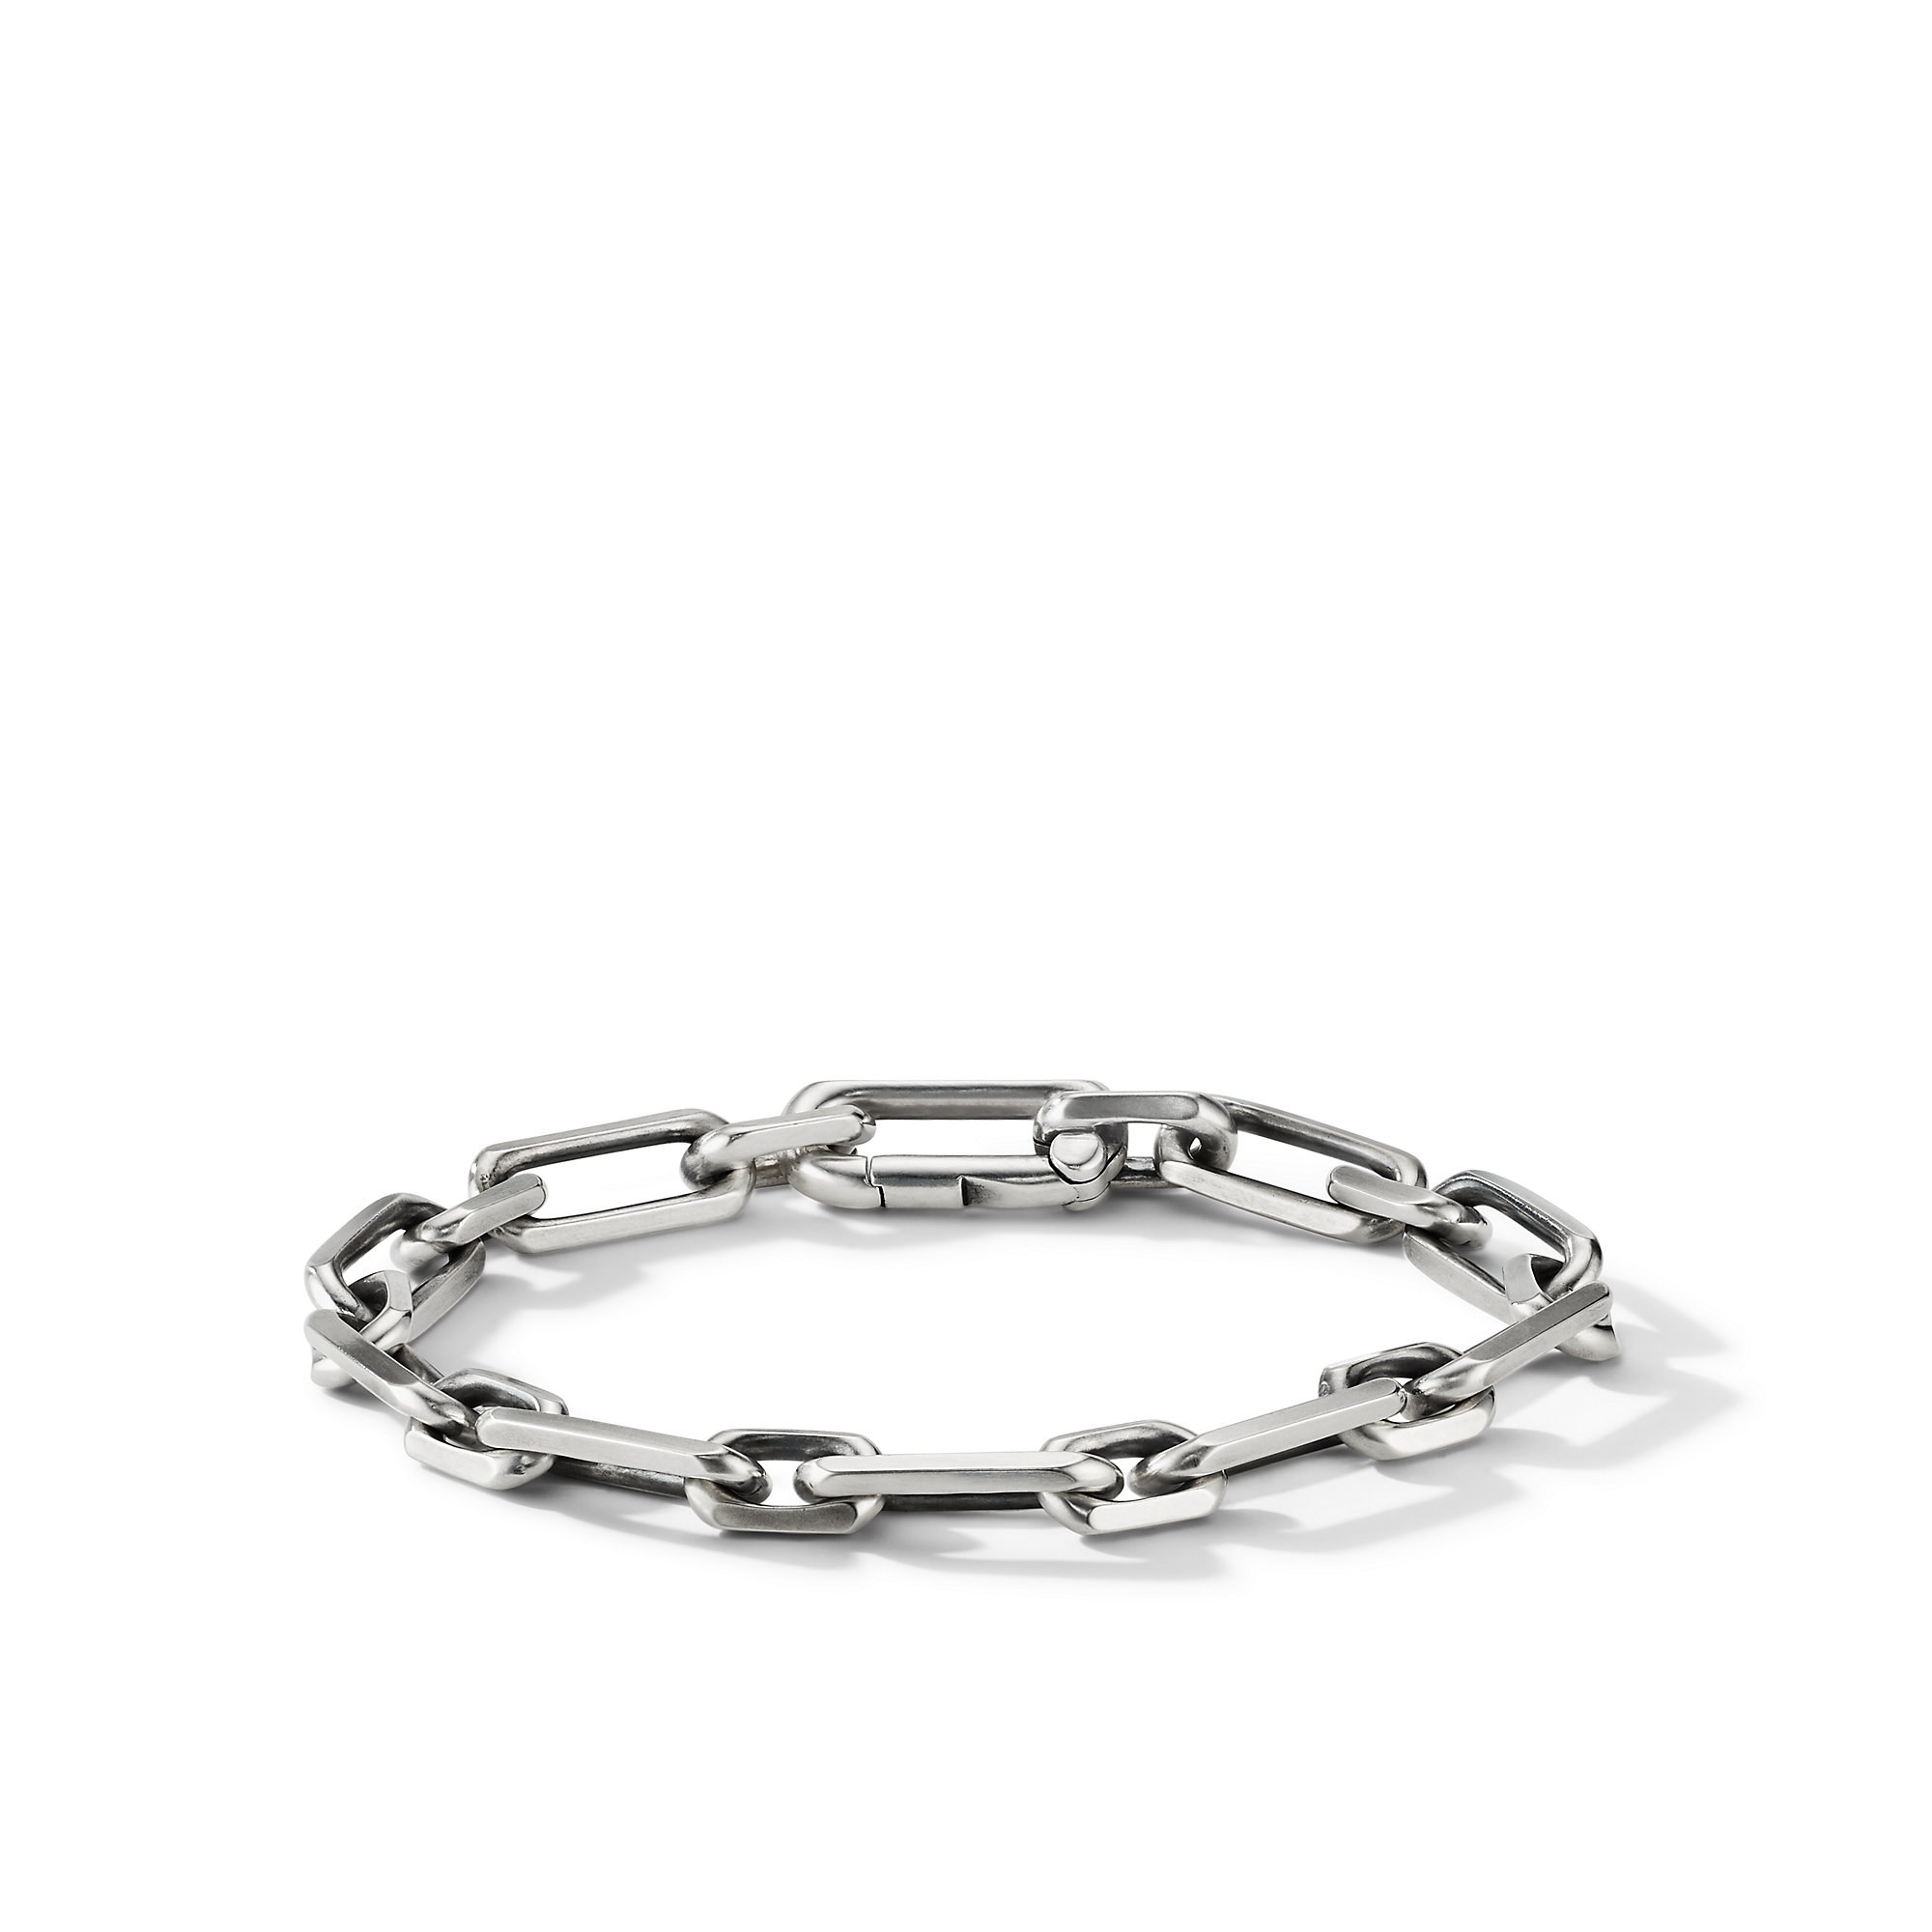 Elongated Open Link Chain Bracelet in Sterling Silver